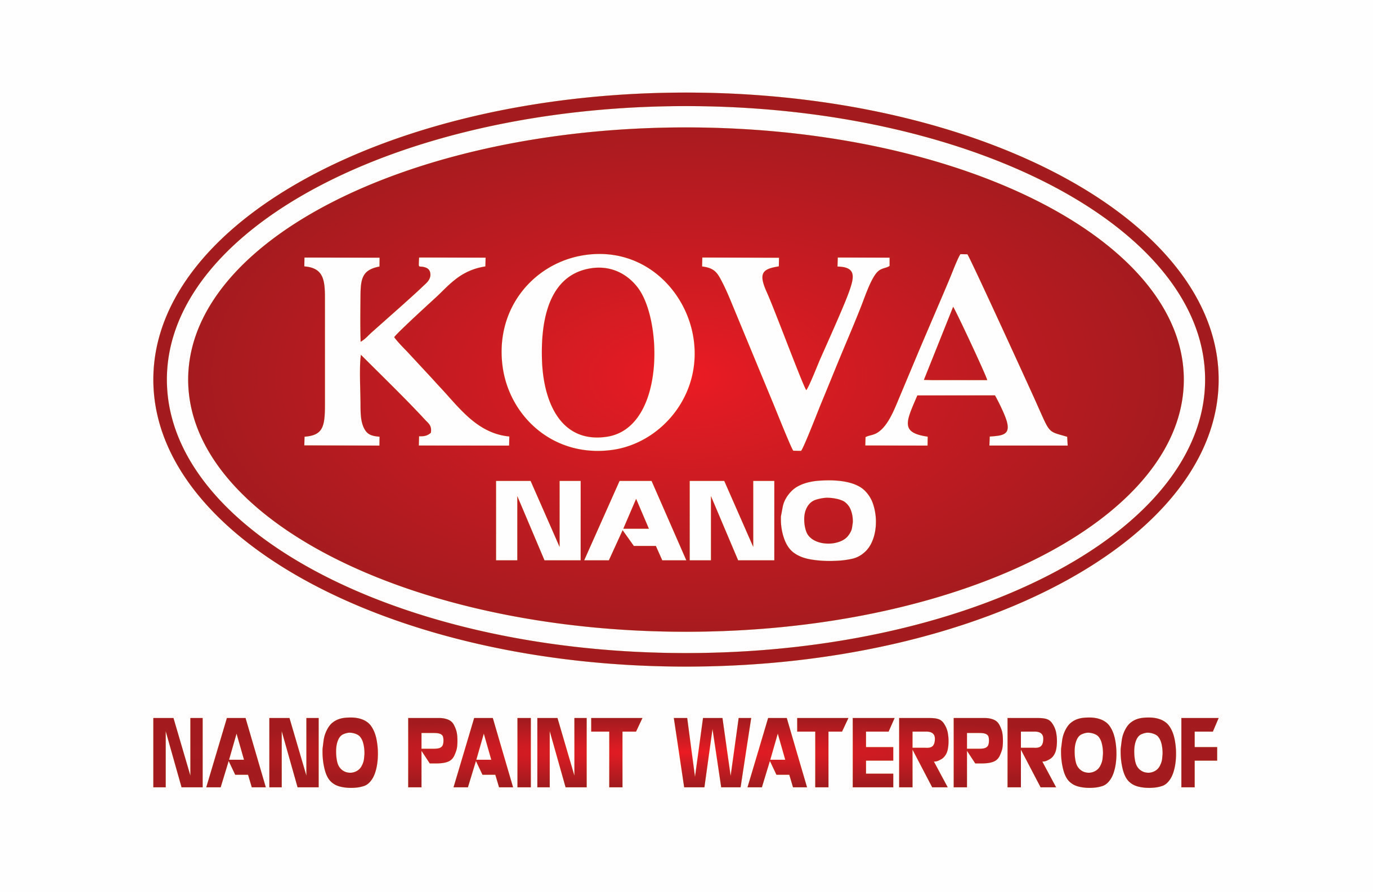 Công ty sơn Kova Nano Quốc Tế đã đạt được nhiều thành tựu và được đánh giá cao trên thị trường sơn. Xem hình ảnh để tìm hiểu và cảm nhận sự khác biệt của sản phẩm và dịch vụ của Kova Nano.